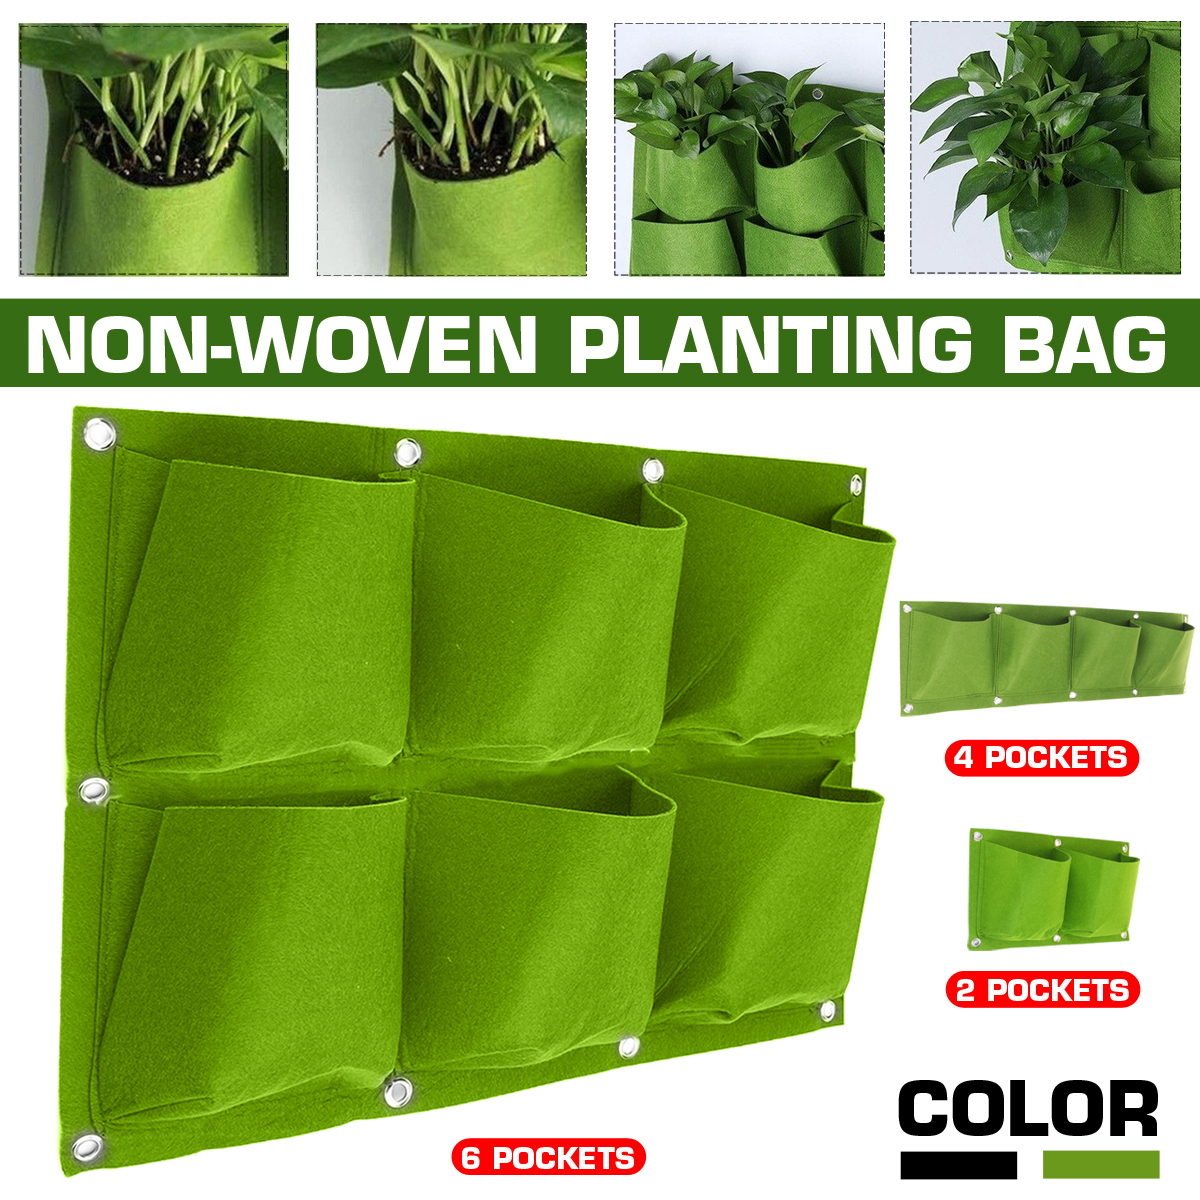 Multi-pocket-Wall-Hanging-Planting-Bag-Fabric-Grow-Bag-1702688-2